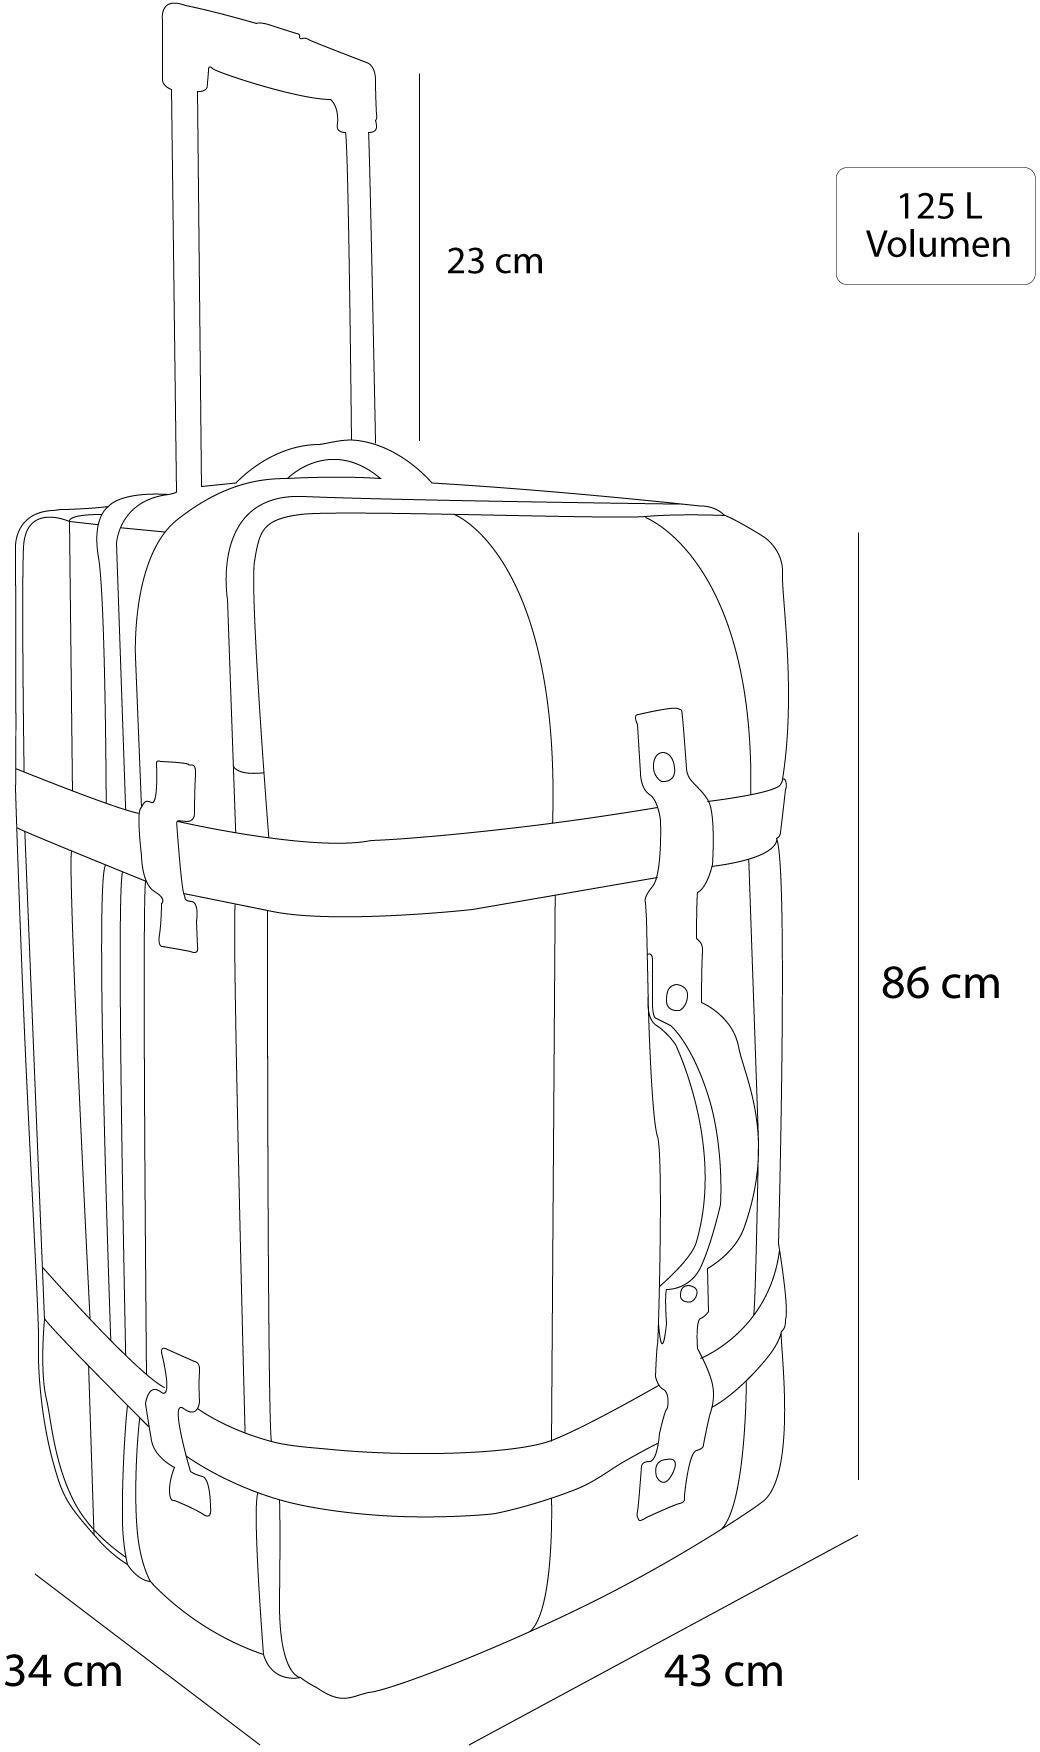 normani Reisetasche Reisetasche Aurori 125, Dunkelgrau/Grau Trolley Fächeraufteilung mit clevere